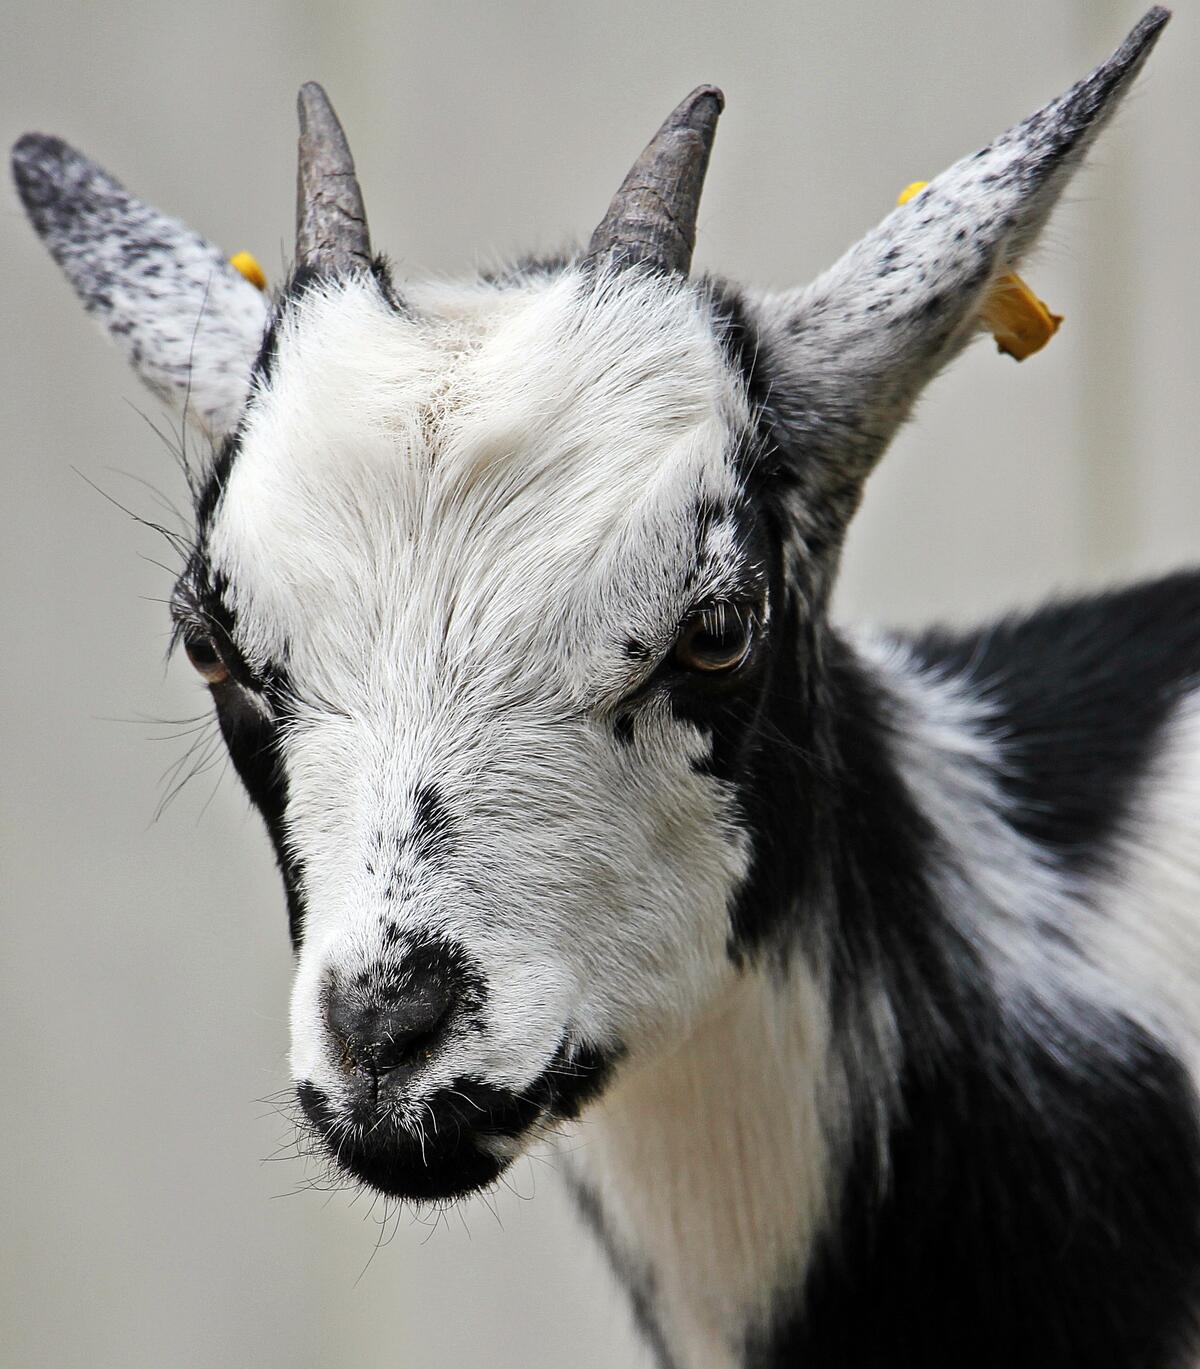 A domestic goat